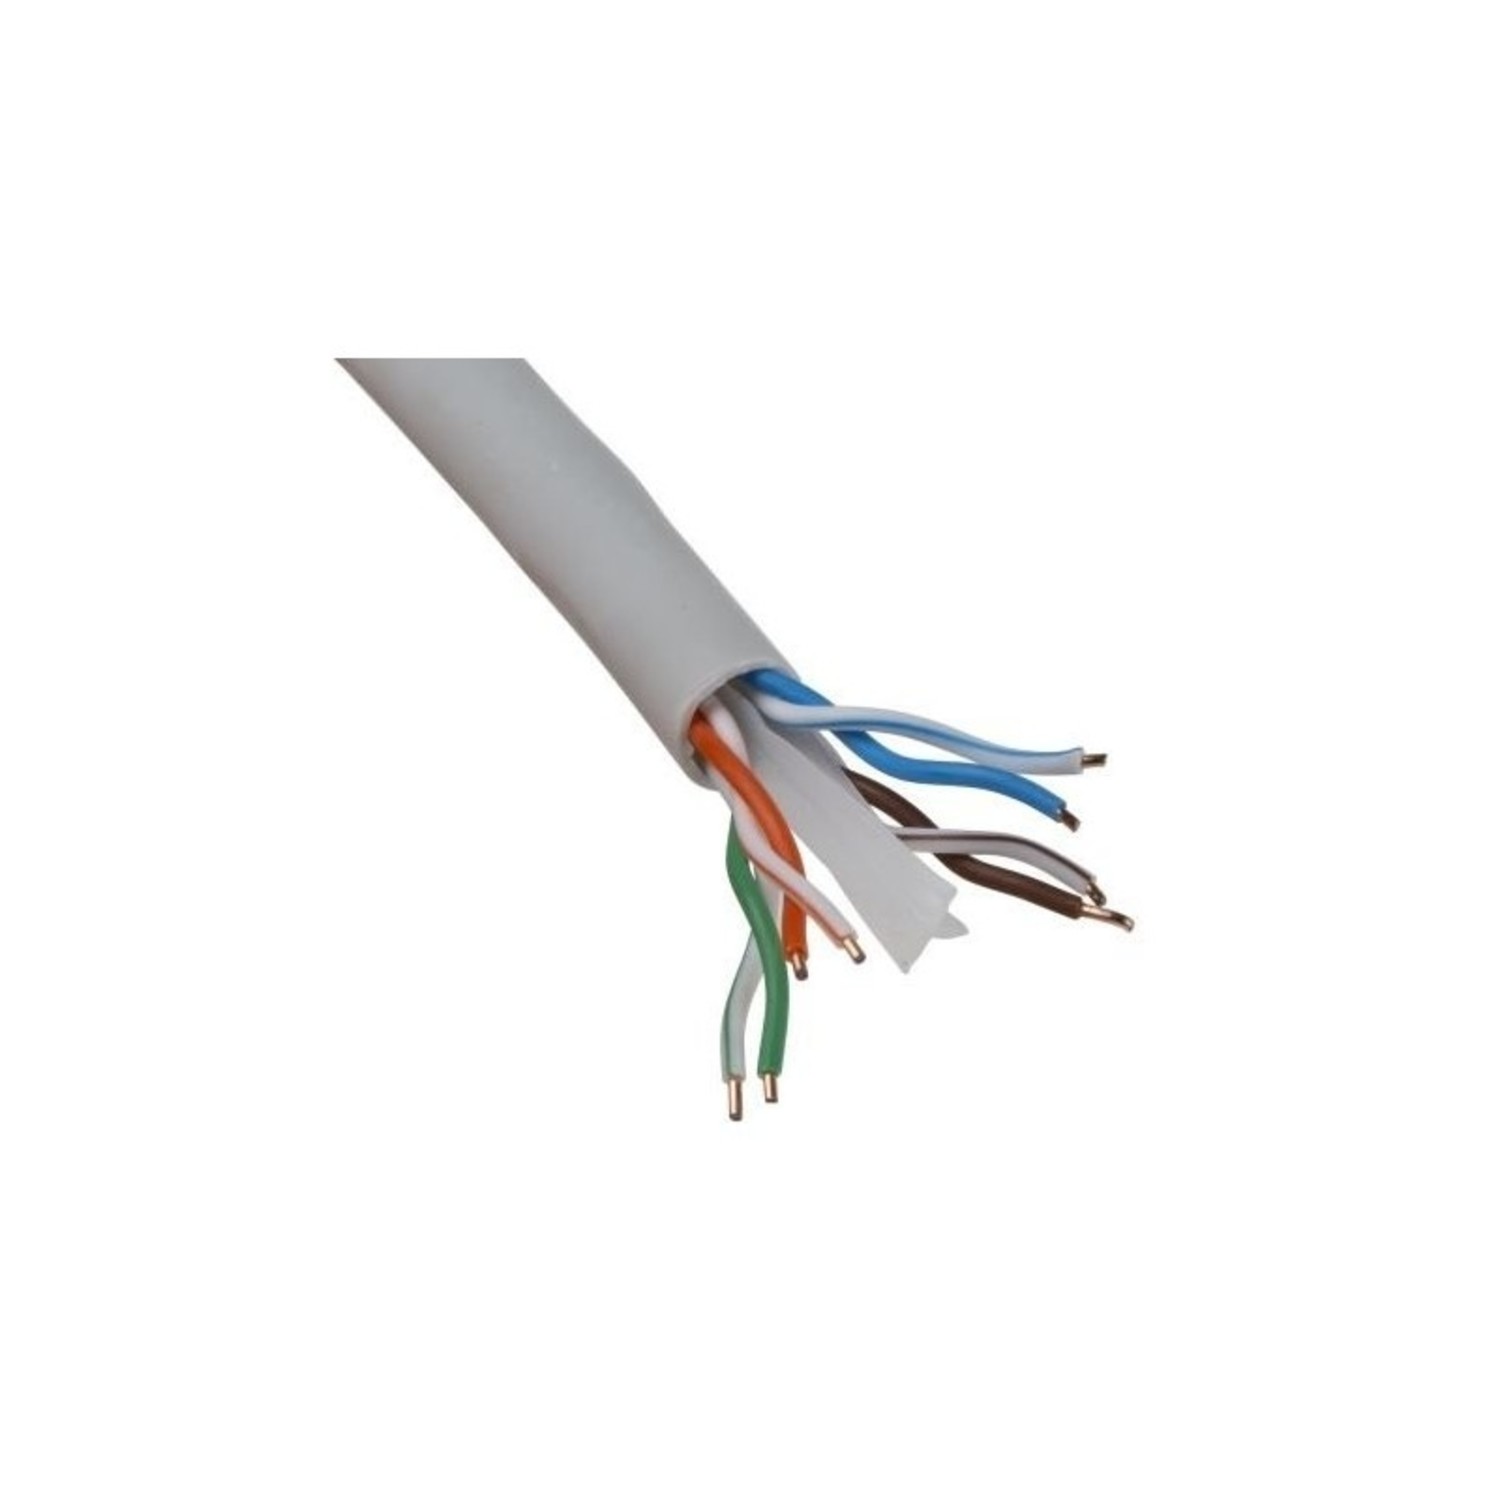 OBS UTP kabel cat 6 per meter - Onlinebeveiligingsshop